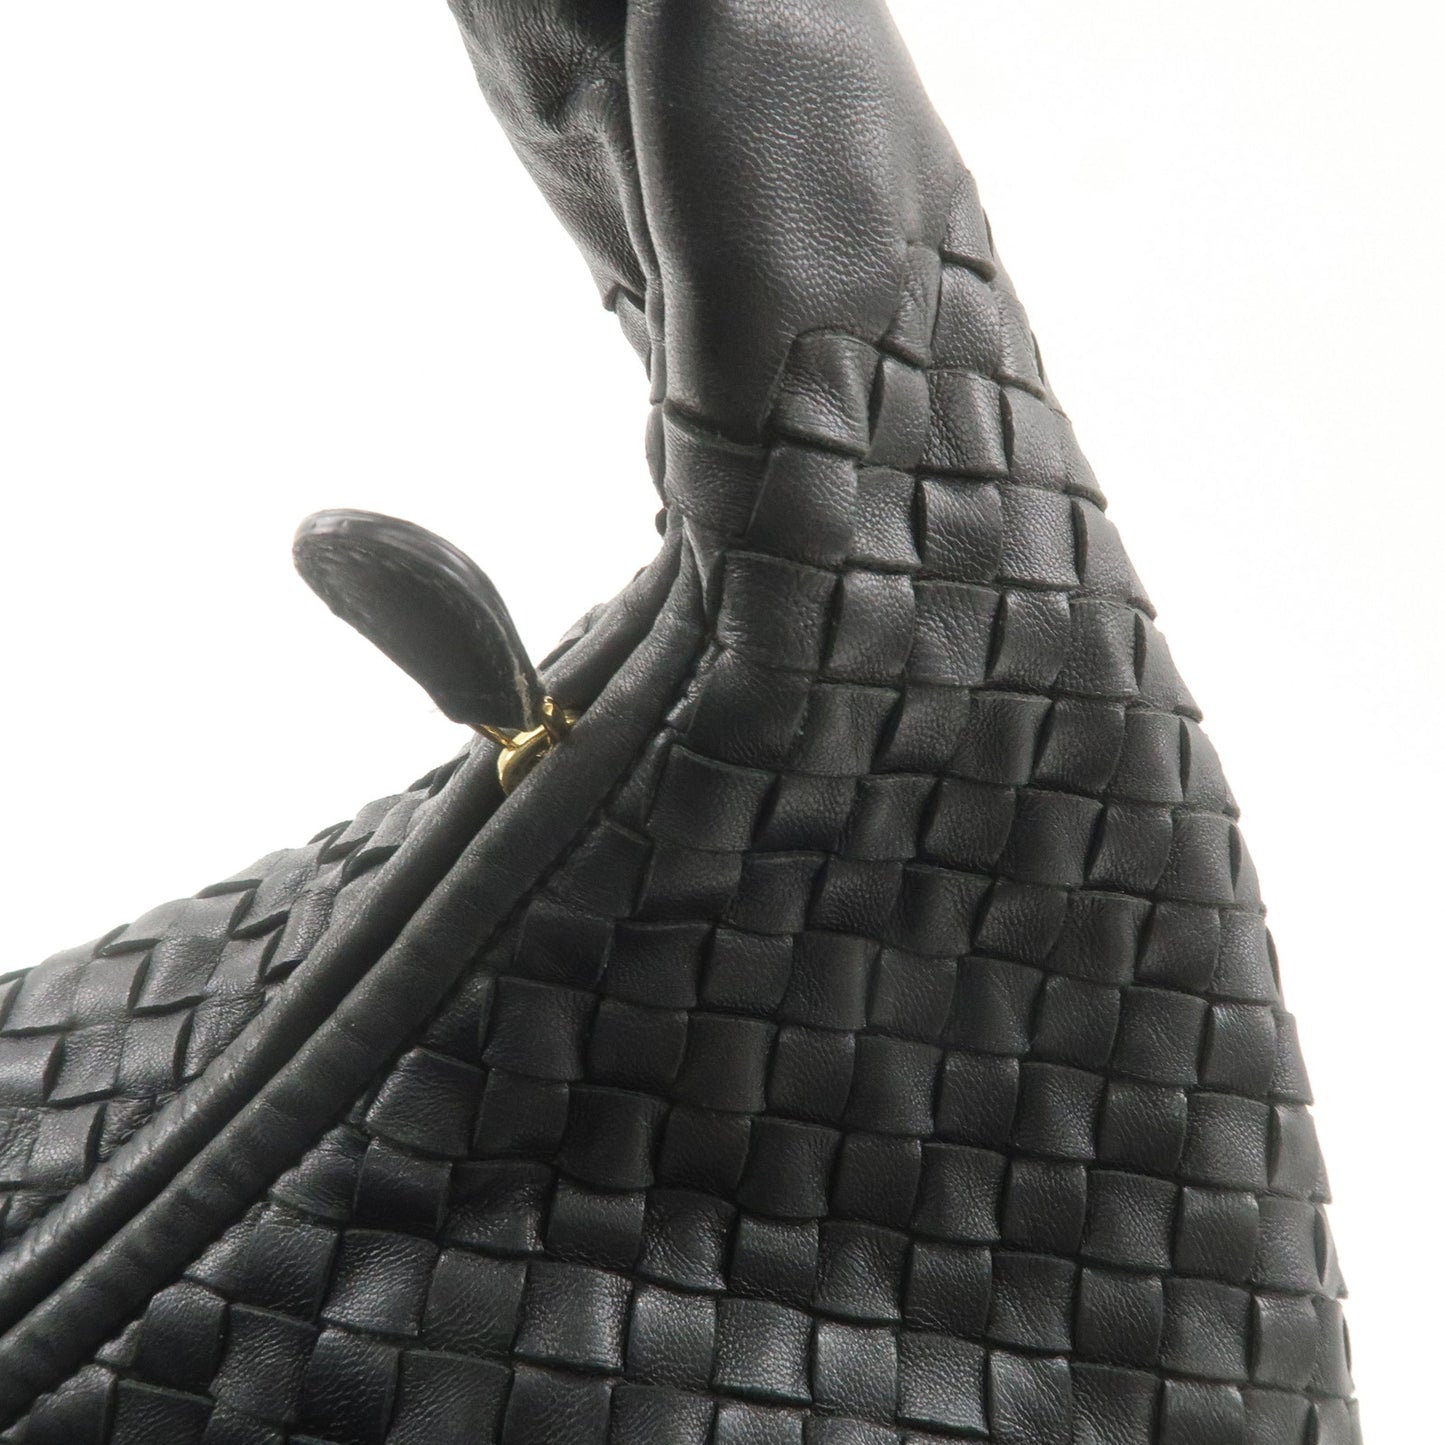 BOTTEGA VENETA Hobo Intrecciato Leather Shoulder Bag Black 181140